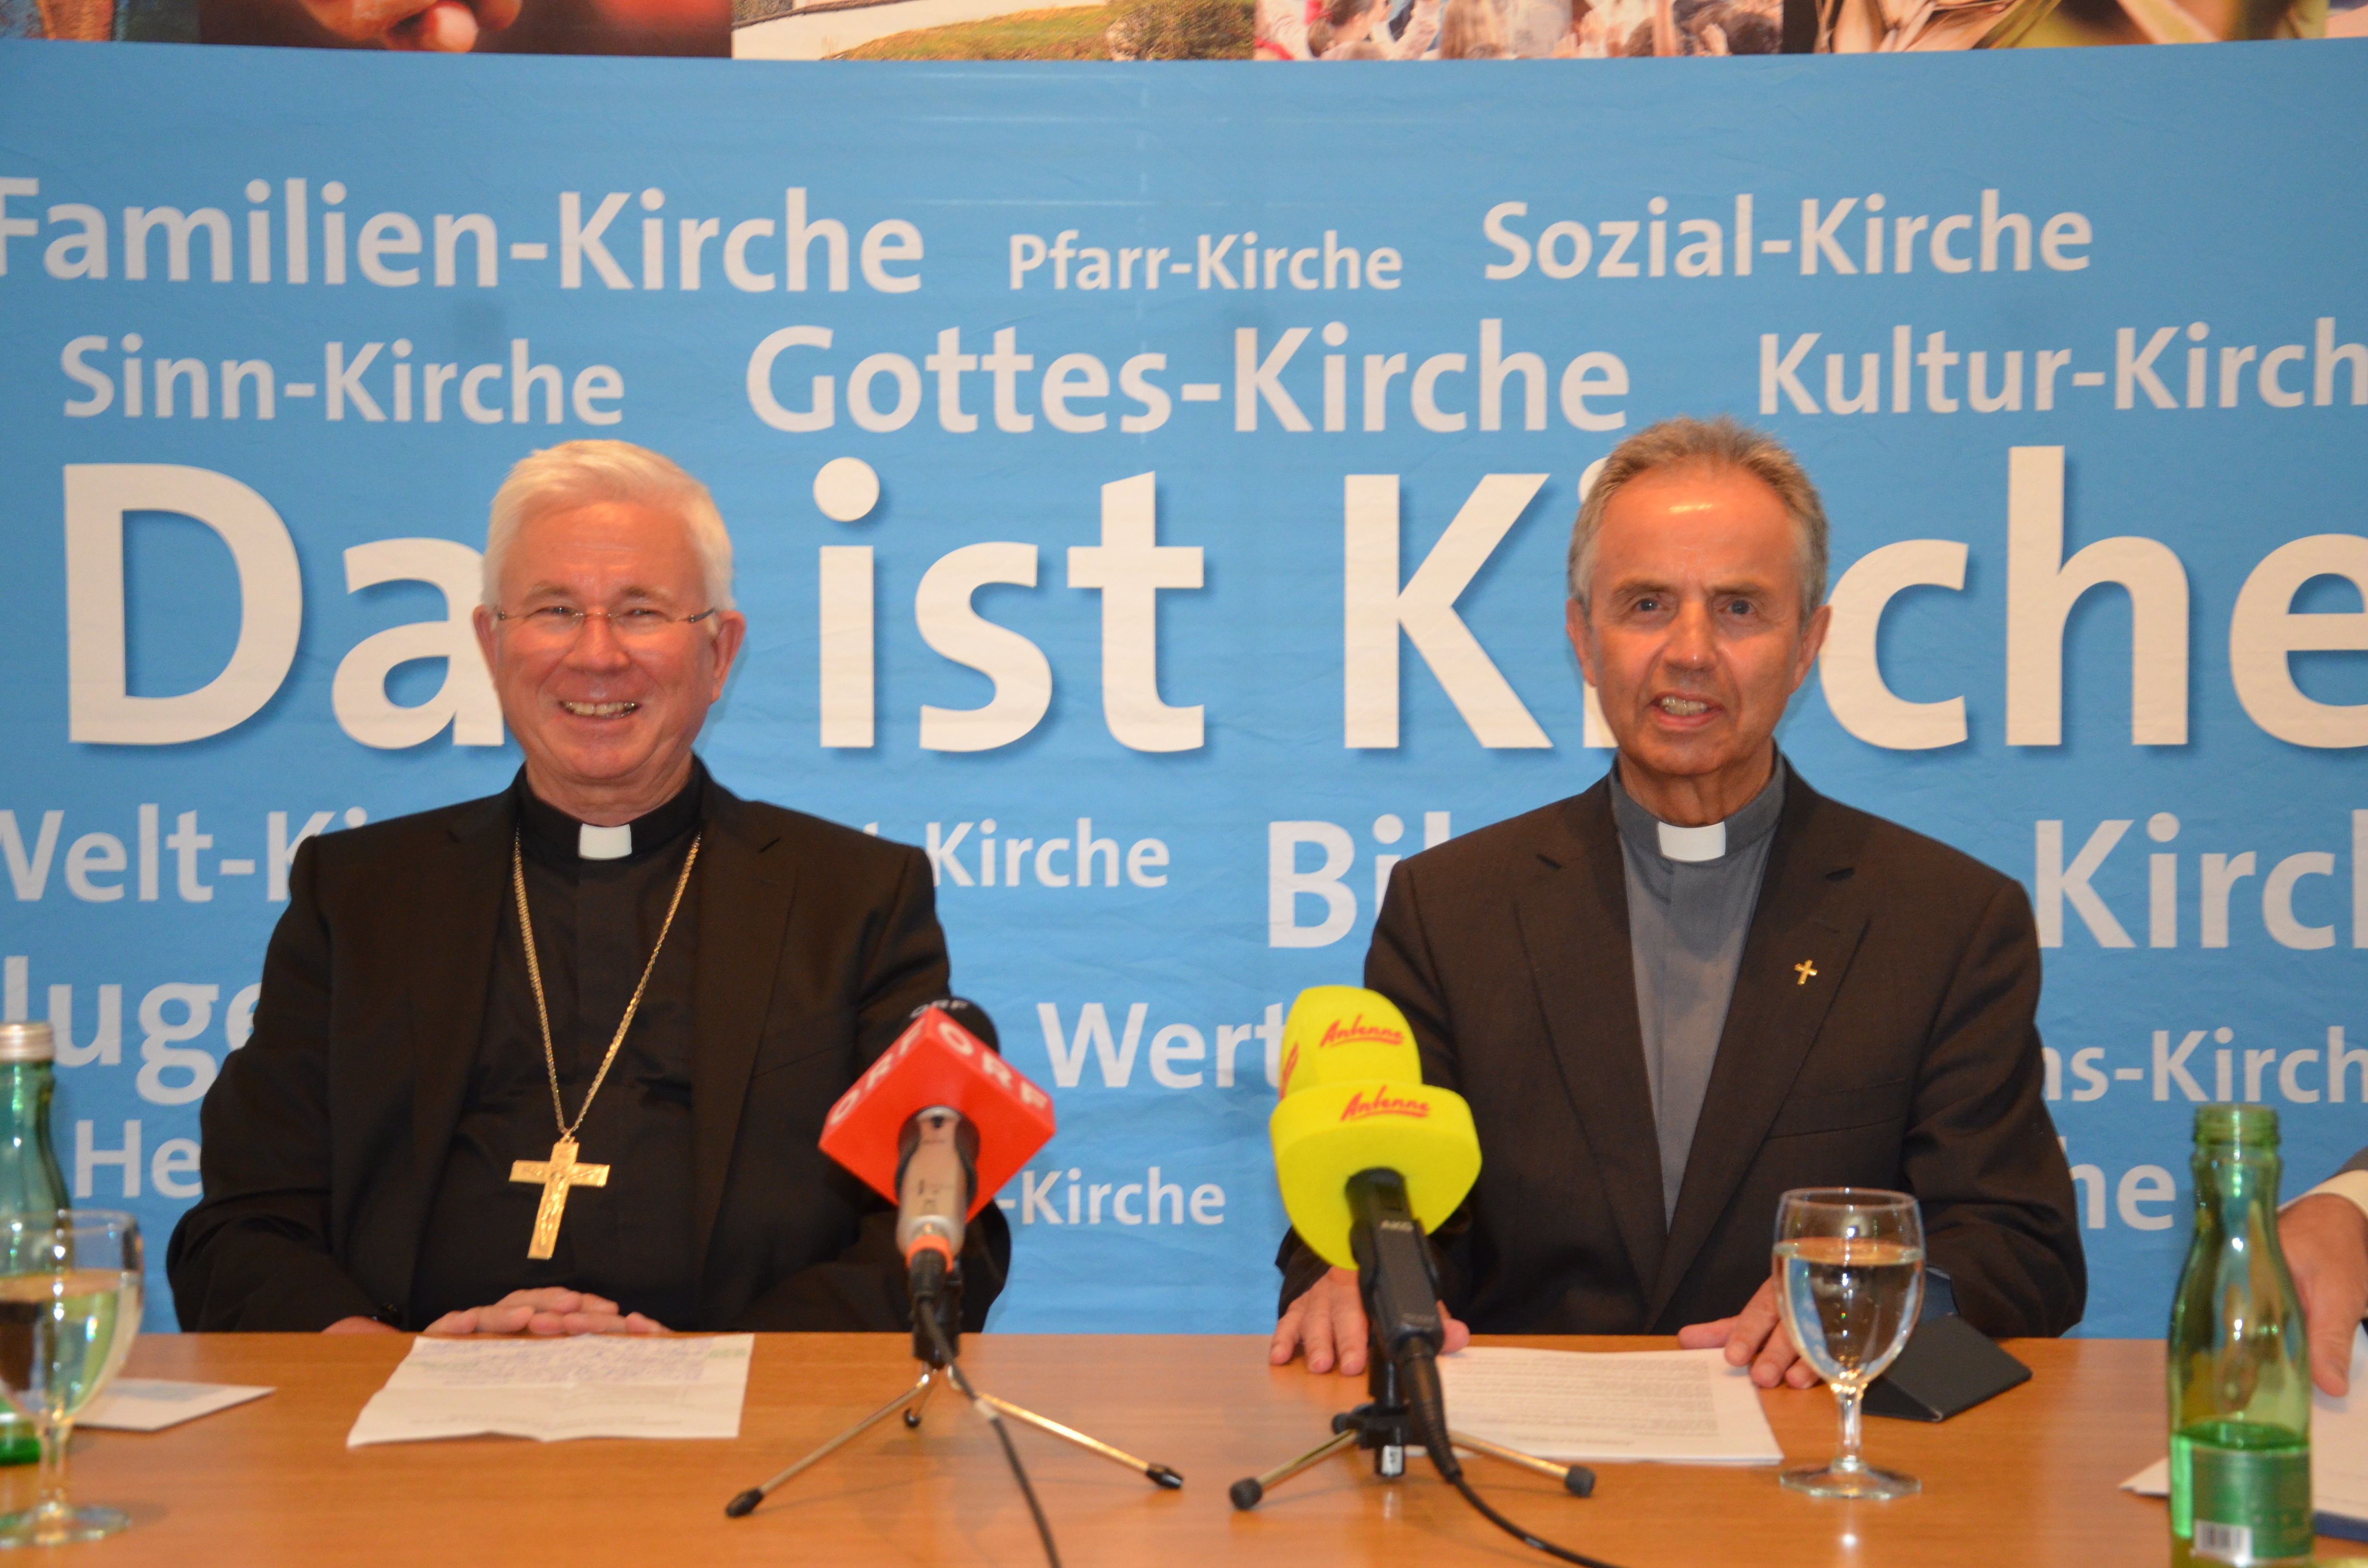 Erste Pressekonferenz mit dem neuen Salzburger Weihbischof